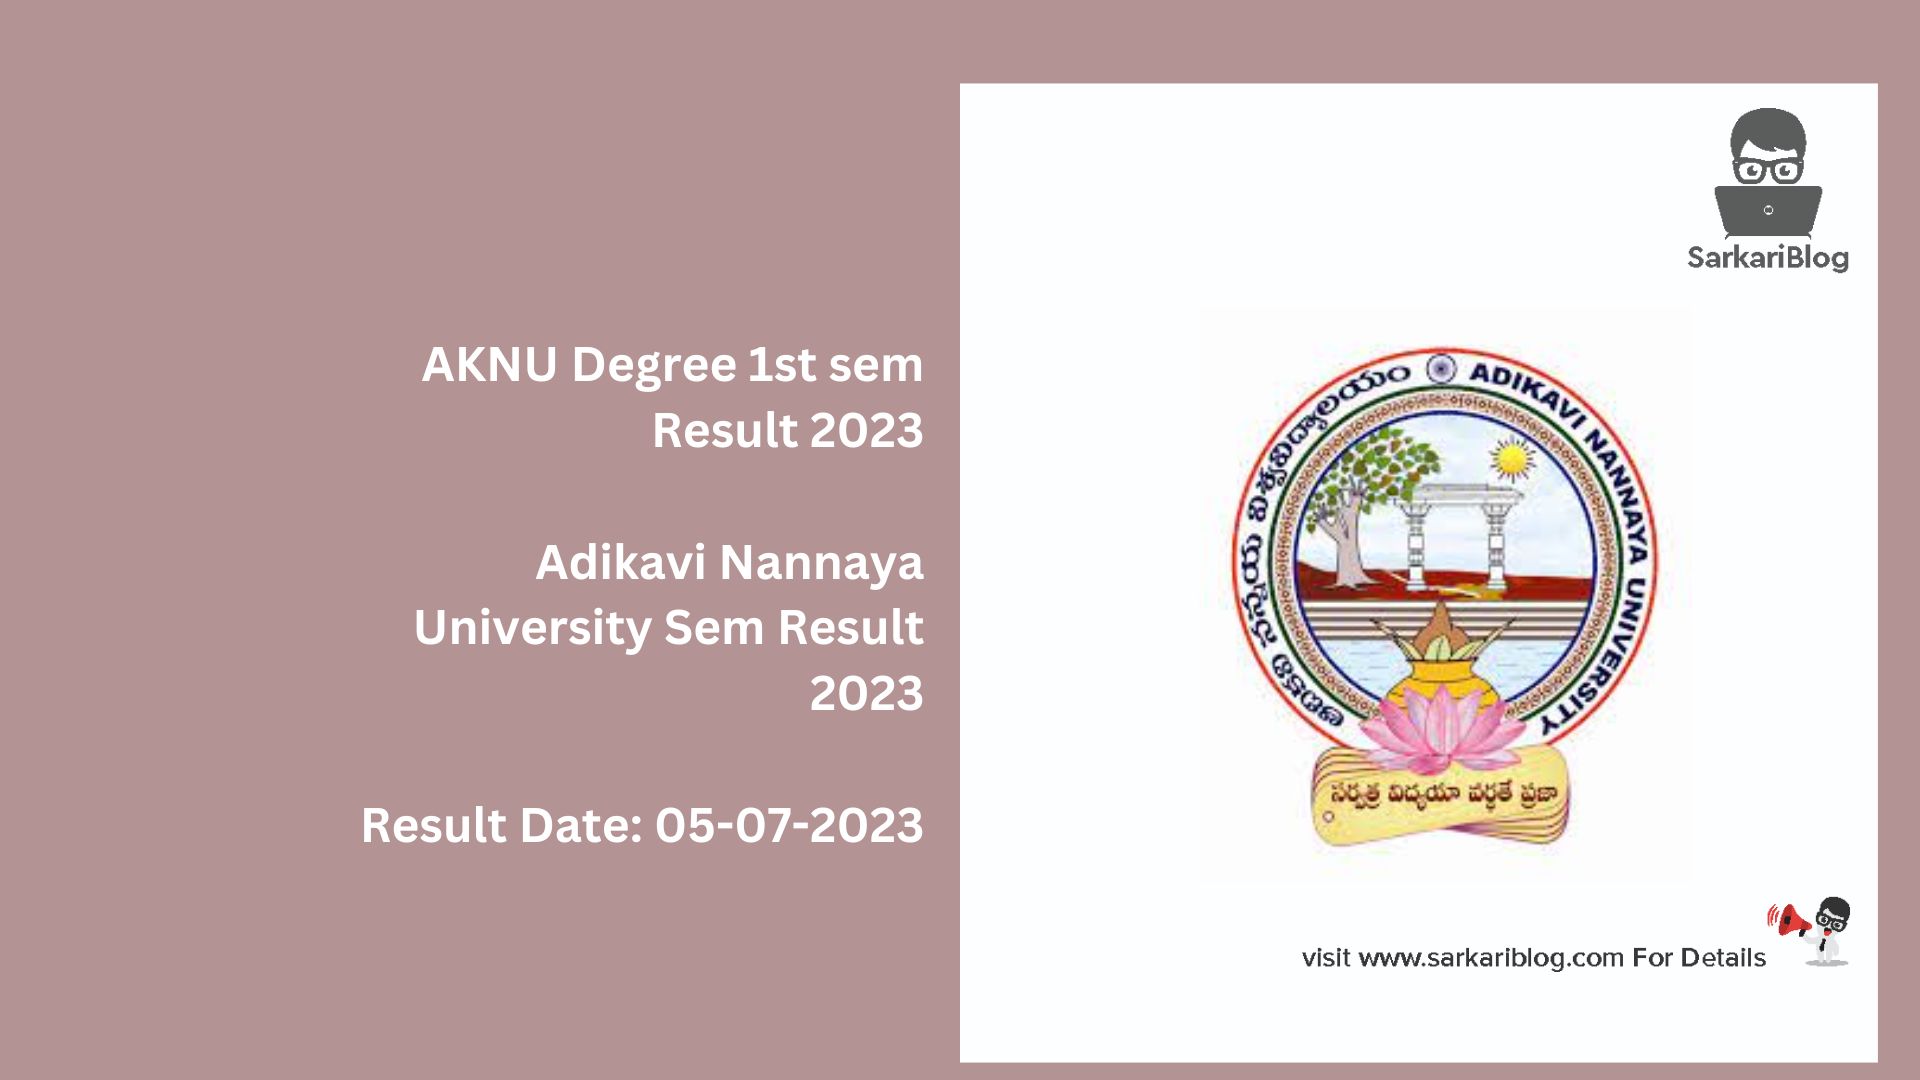 AKNU Degree 1st sem Result 2023